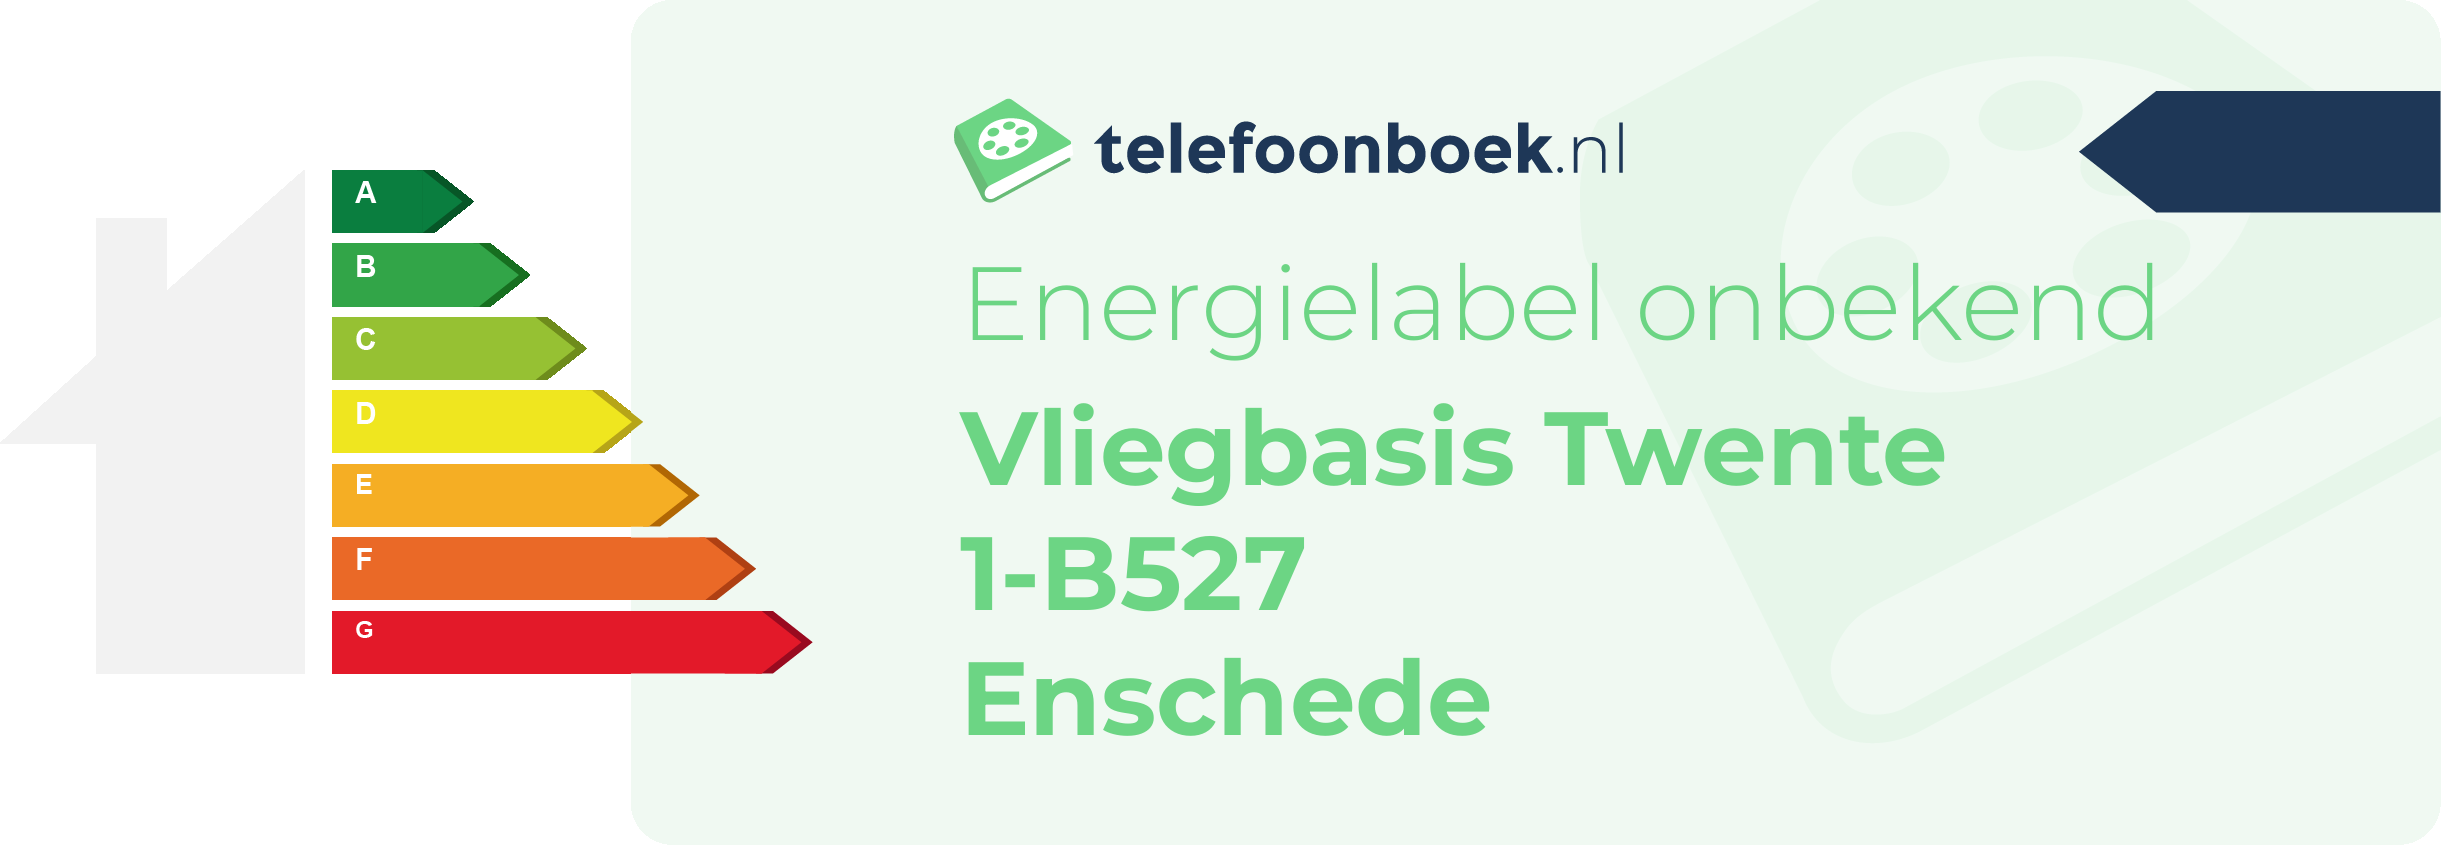 Energielabel Vliegbasis Twente 1-B527 Enschede